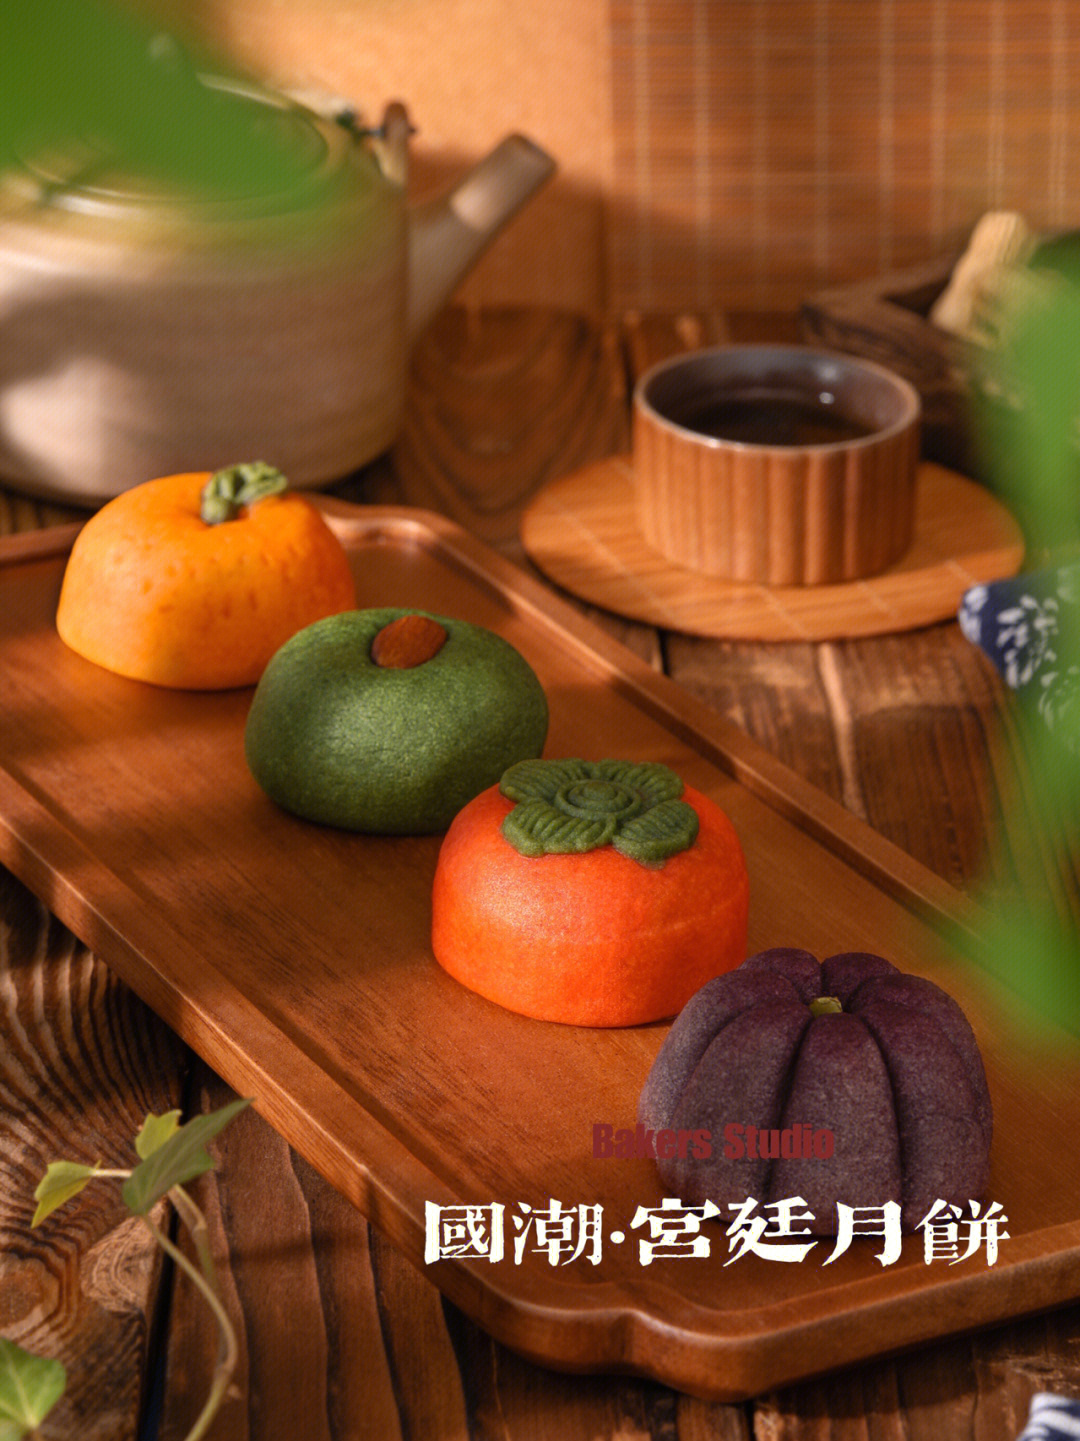 甜腻[哇]16615柿柿如意(柿子):冰翅蛋黄26615好事花生(花生)